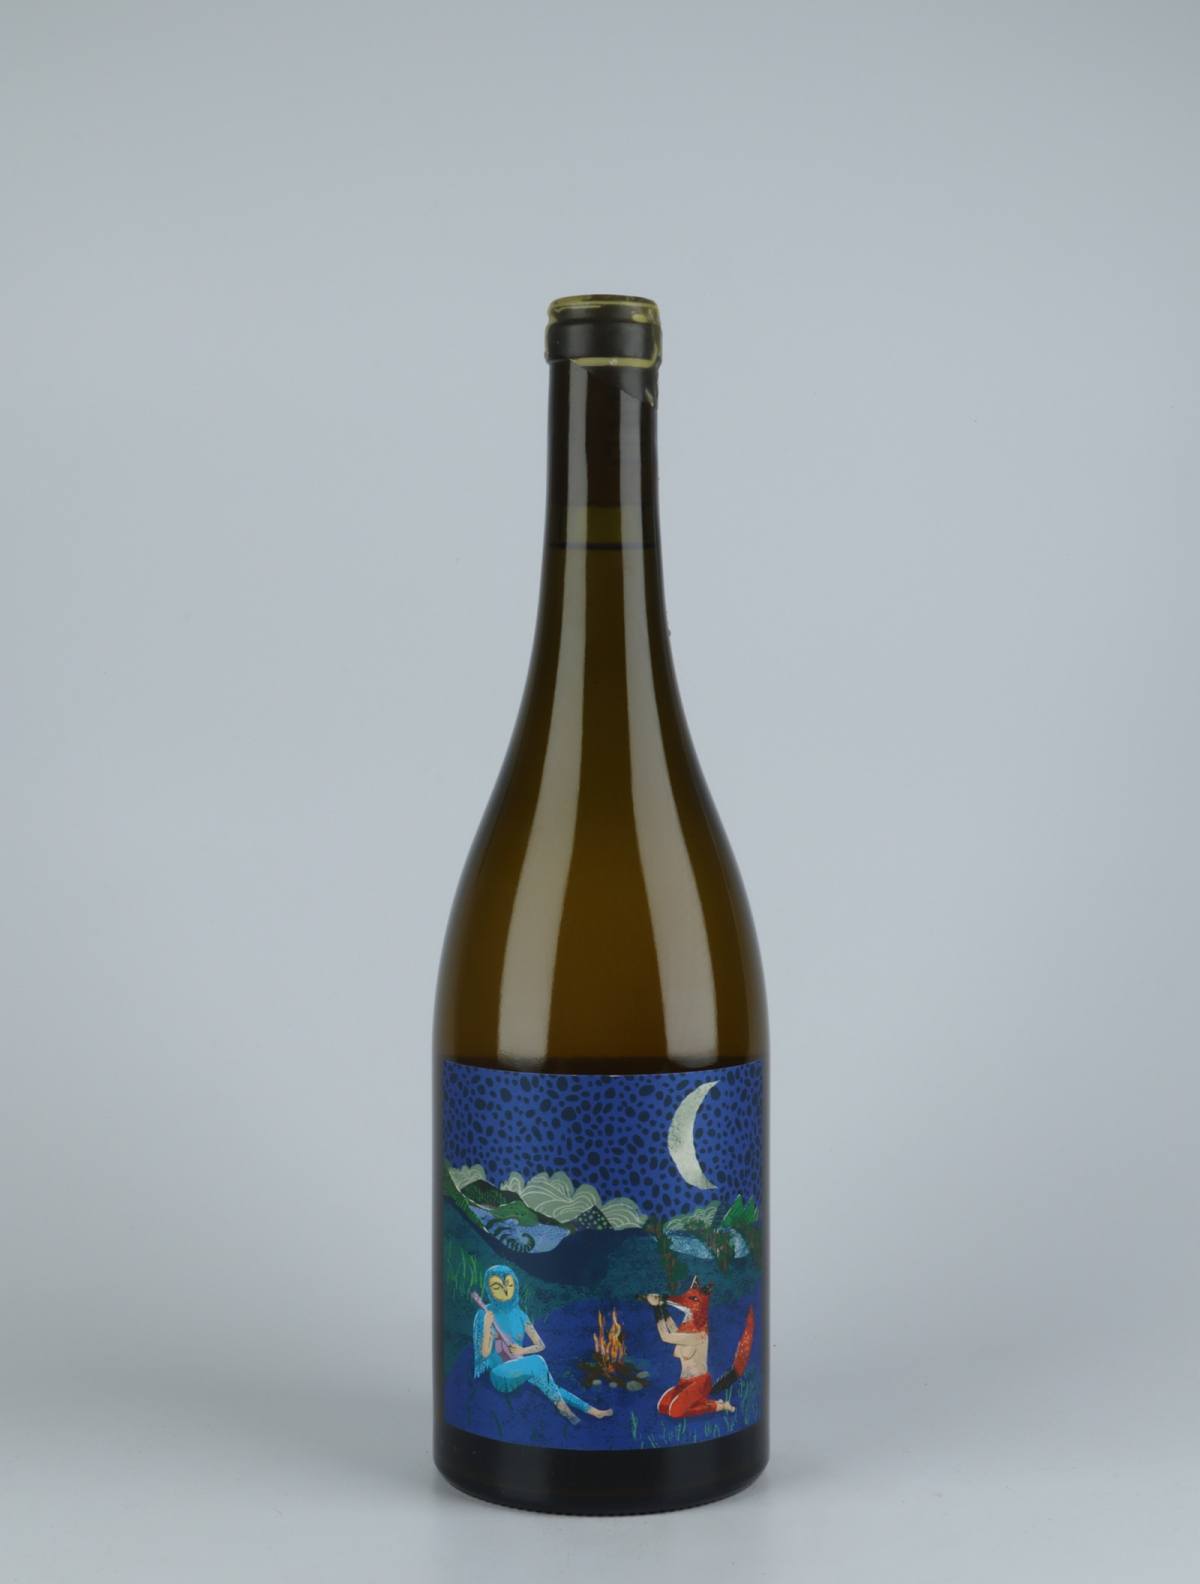 A bottle 2020 Luna Nueva Orange wine from Kindeli, Nelson in New Zealand